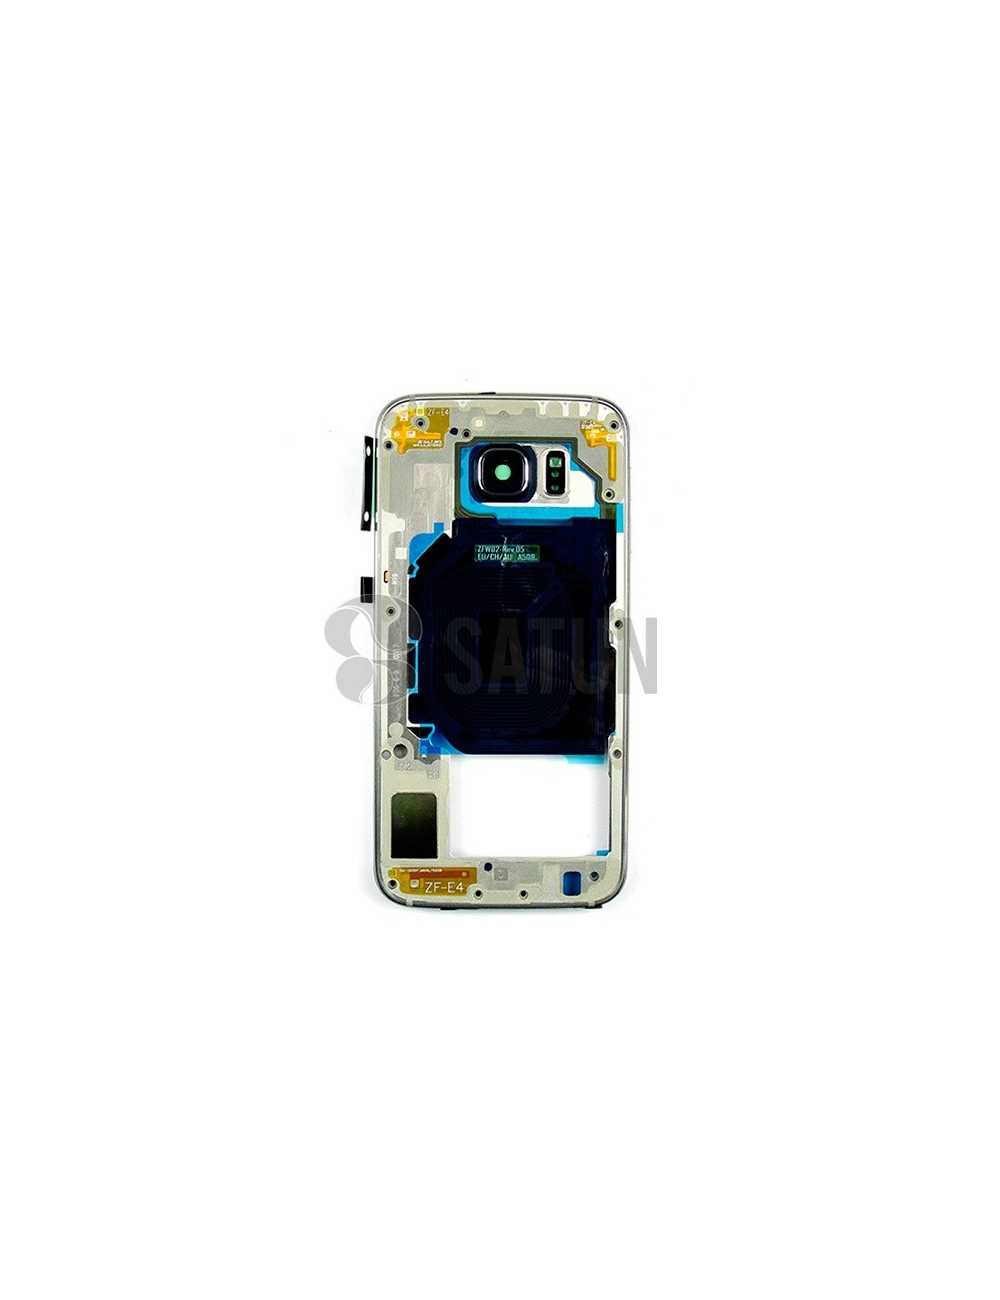 Carcasa intermedia Samsung Galaxy S6 blanco (original con uso)